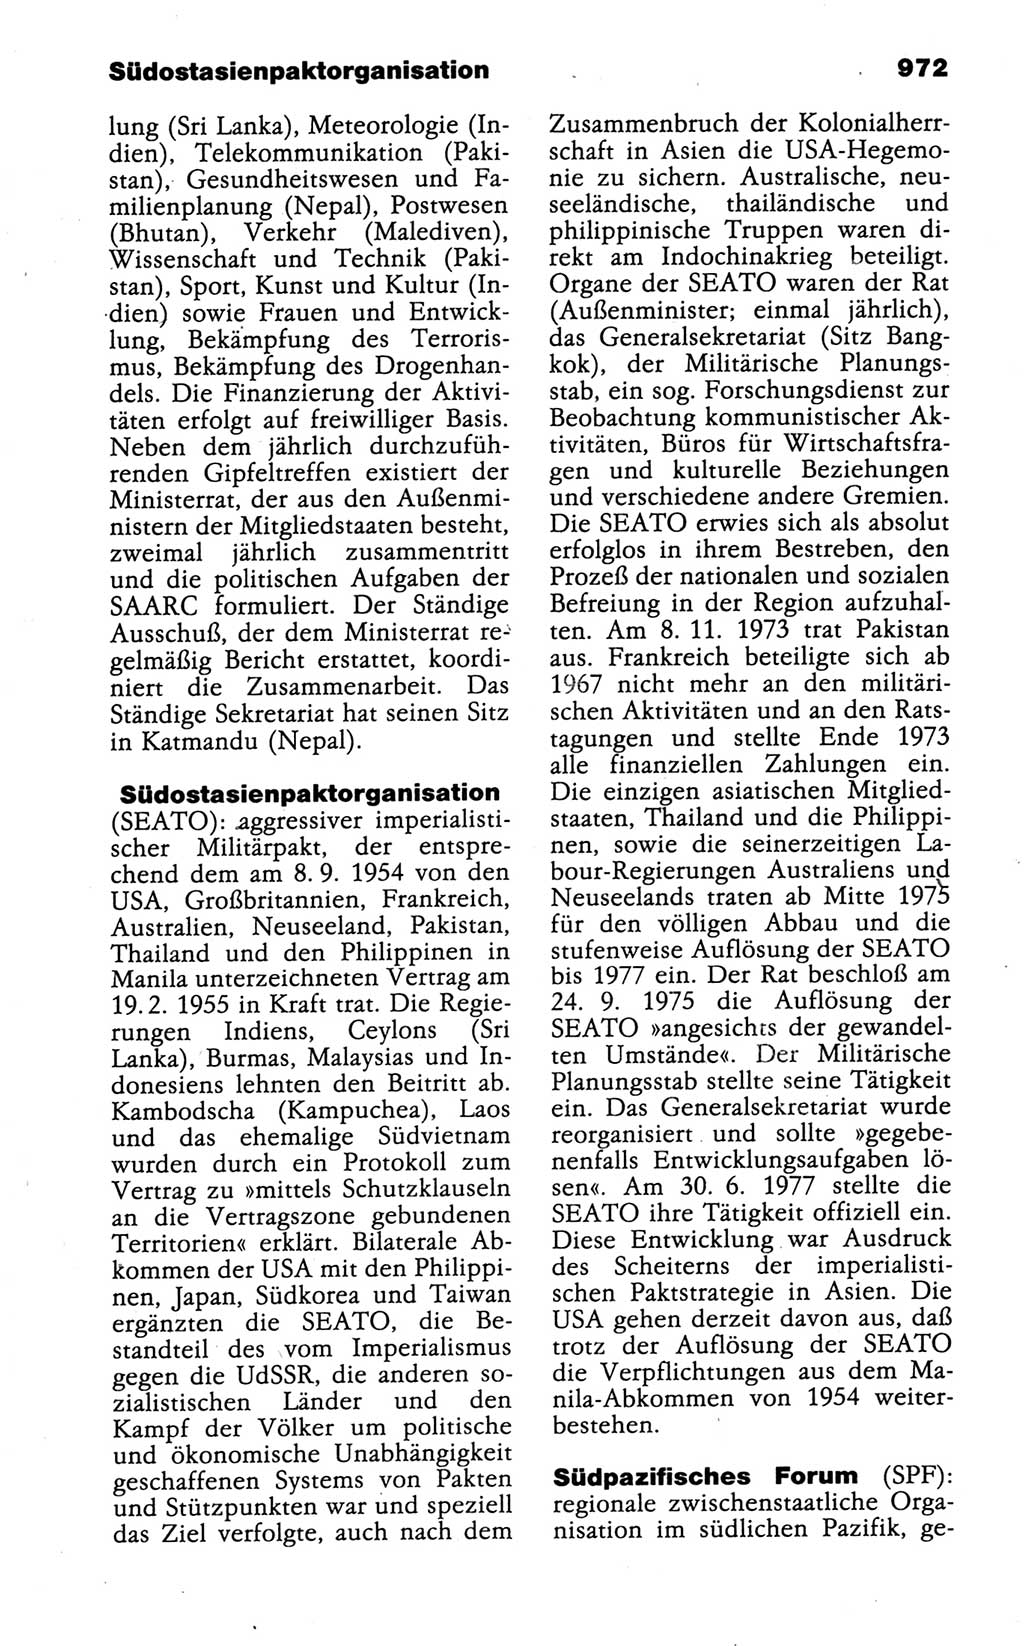 Kleines politisches Wörterbuch [Deutsche Demokratische Republik (DDR)] 1988, Seite 972 (Kl. pol. Wb. DDR 1988, S. 972)